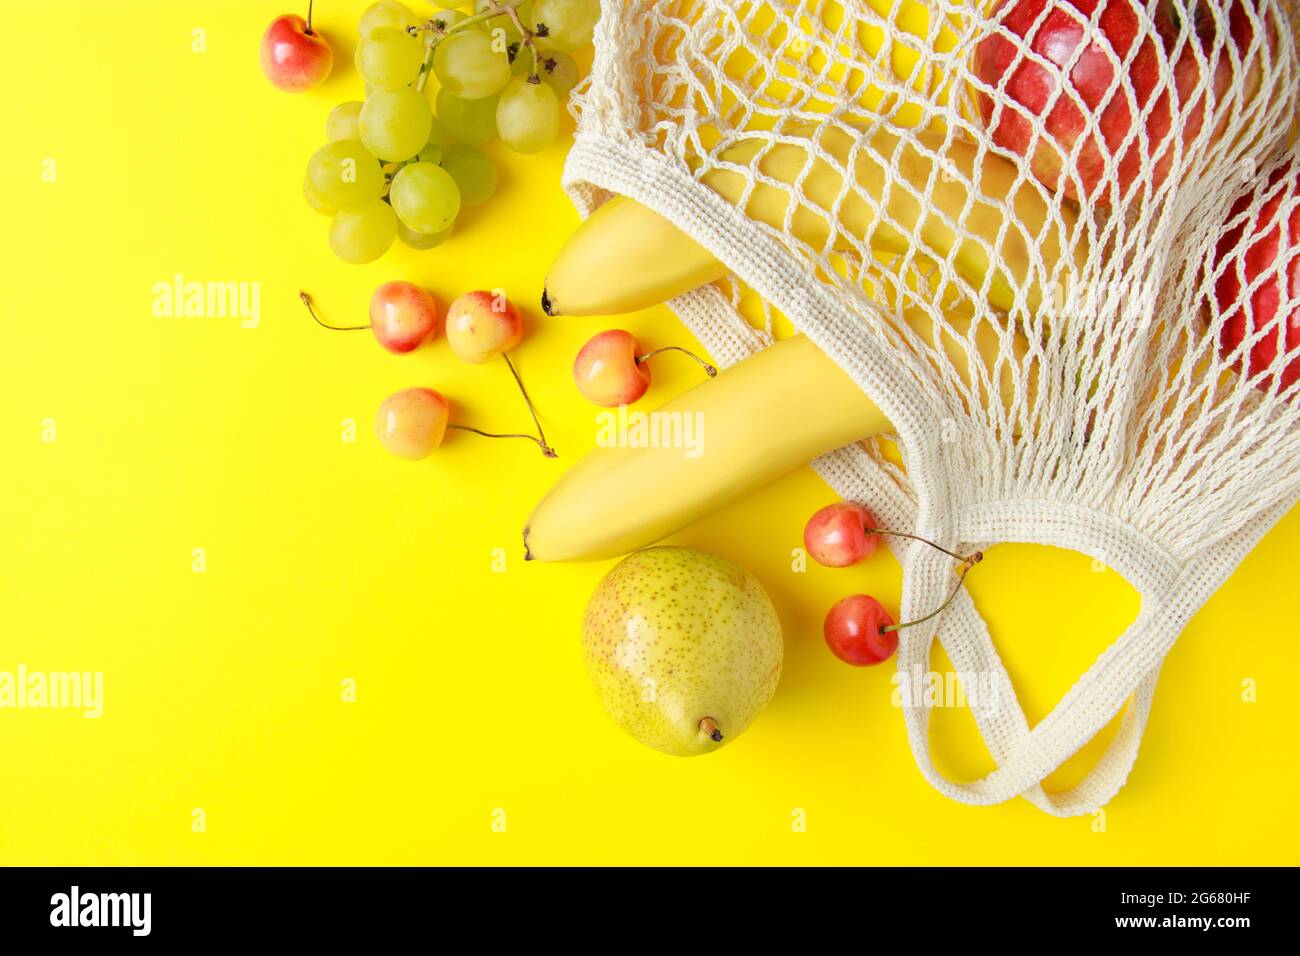 Umweltfreundliche Einkaufstasche aus Baumwolle. Reife Früchte in einem Netzbeutel auf gelbem Hintergrund. Vegane Bio-Lebensmittel. Nachhaltiger Lebensstil und Zero Waste Konzept. Stockfoto